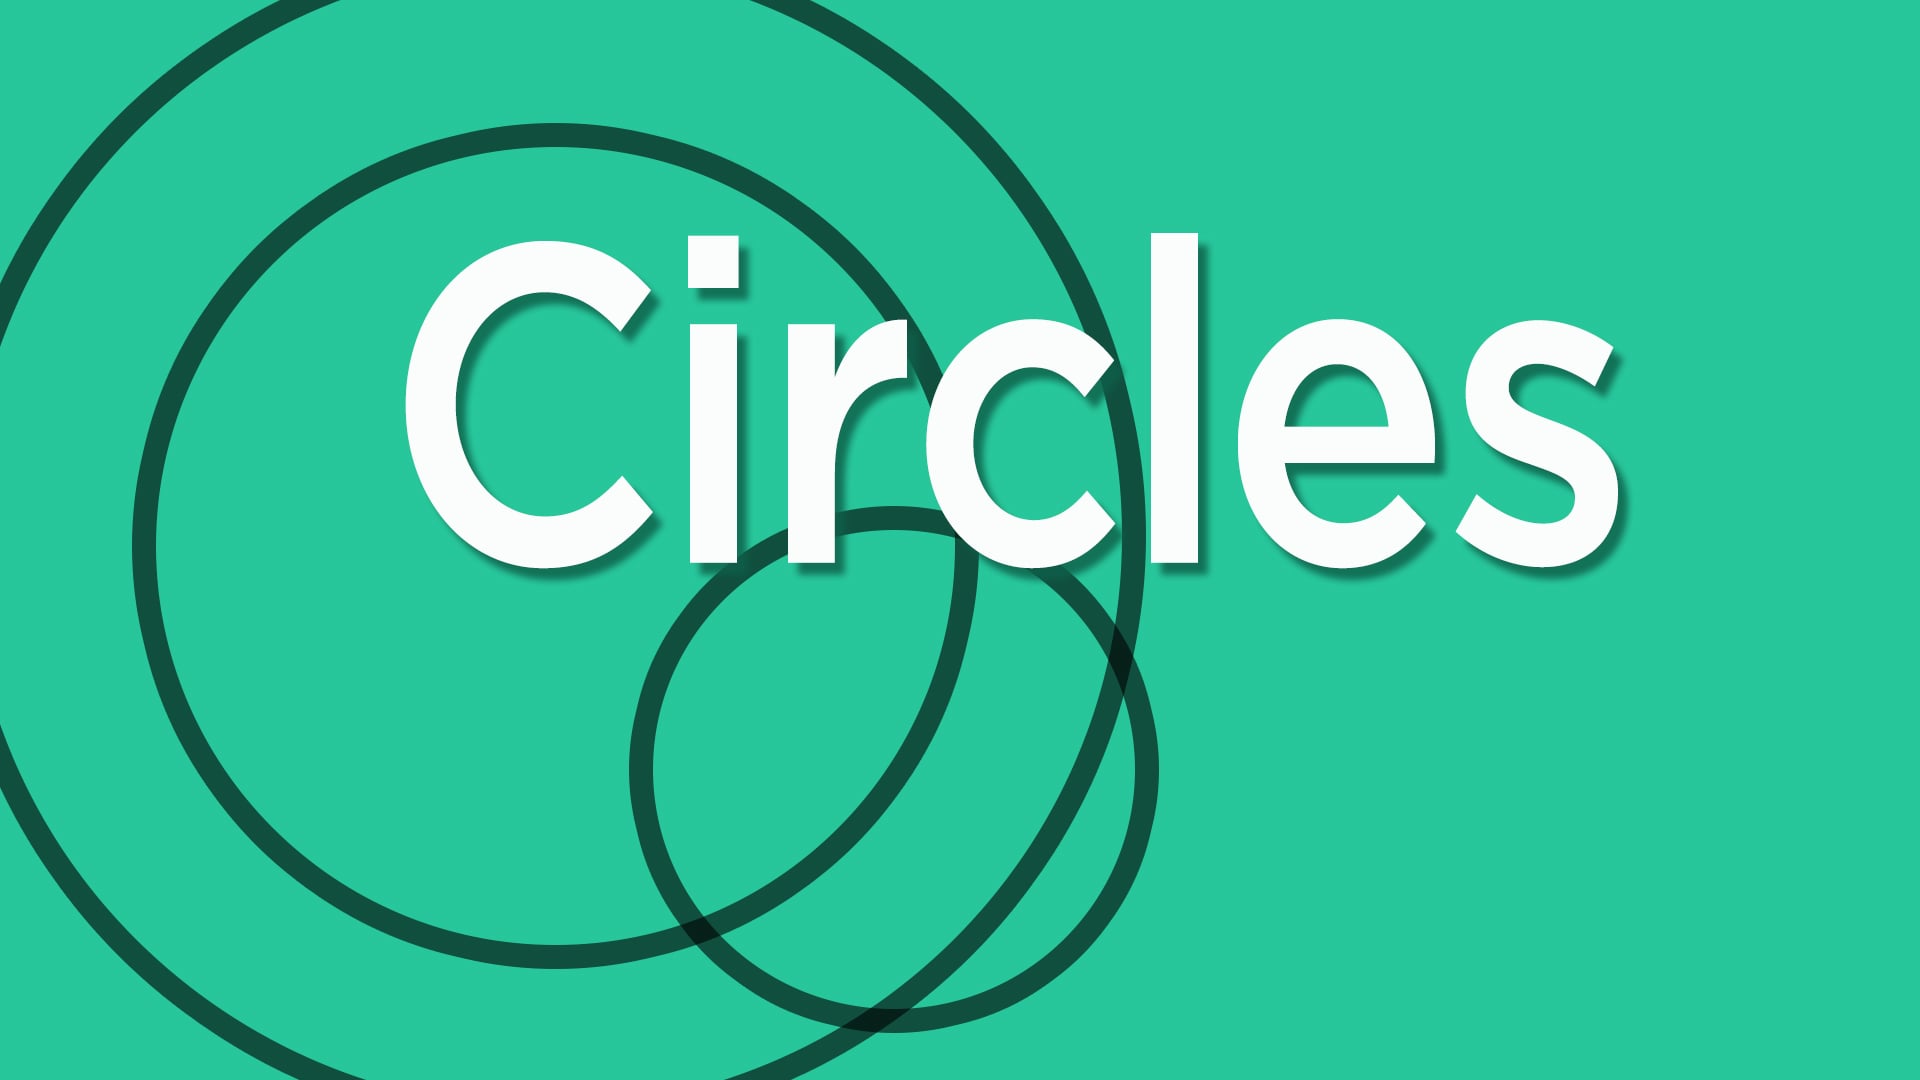 The Big Circle